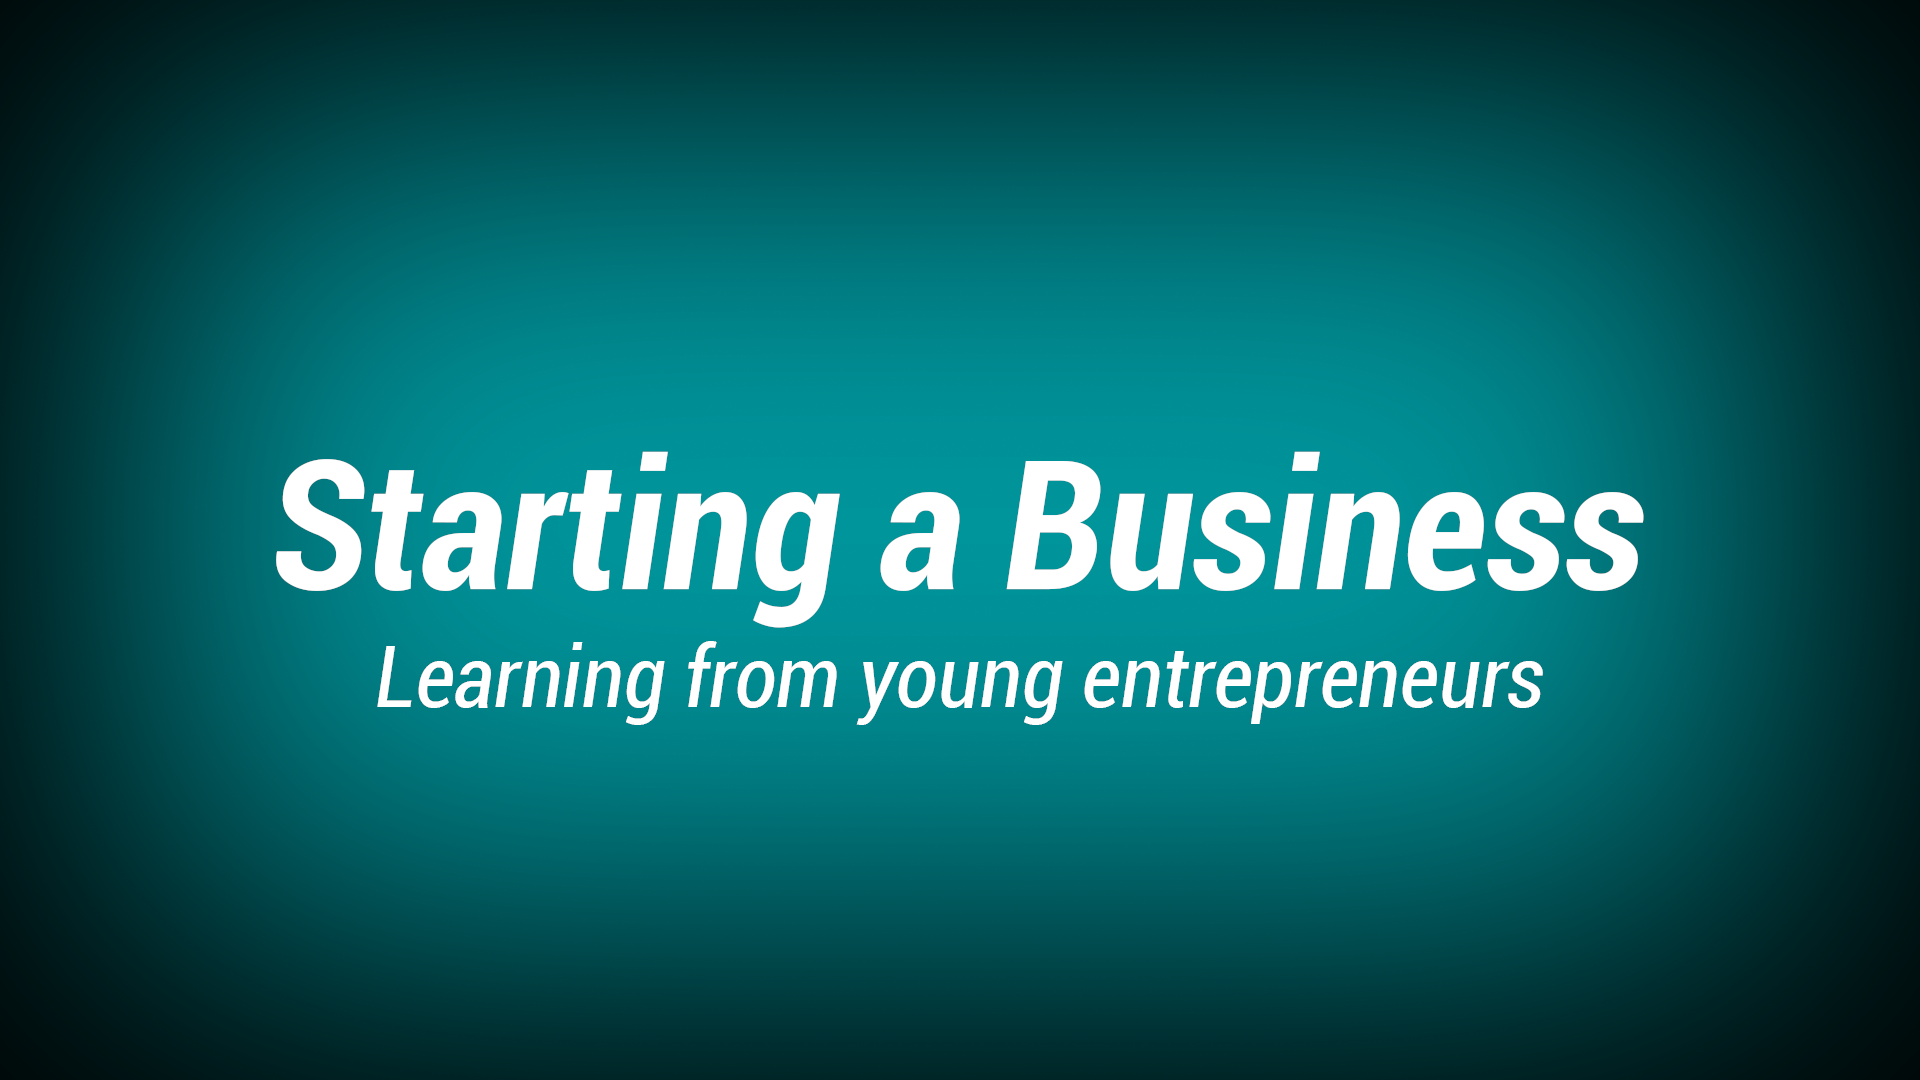 4. Starting a business / An original idea